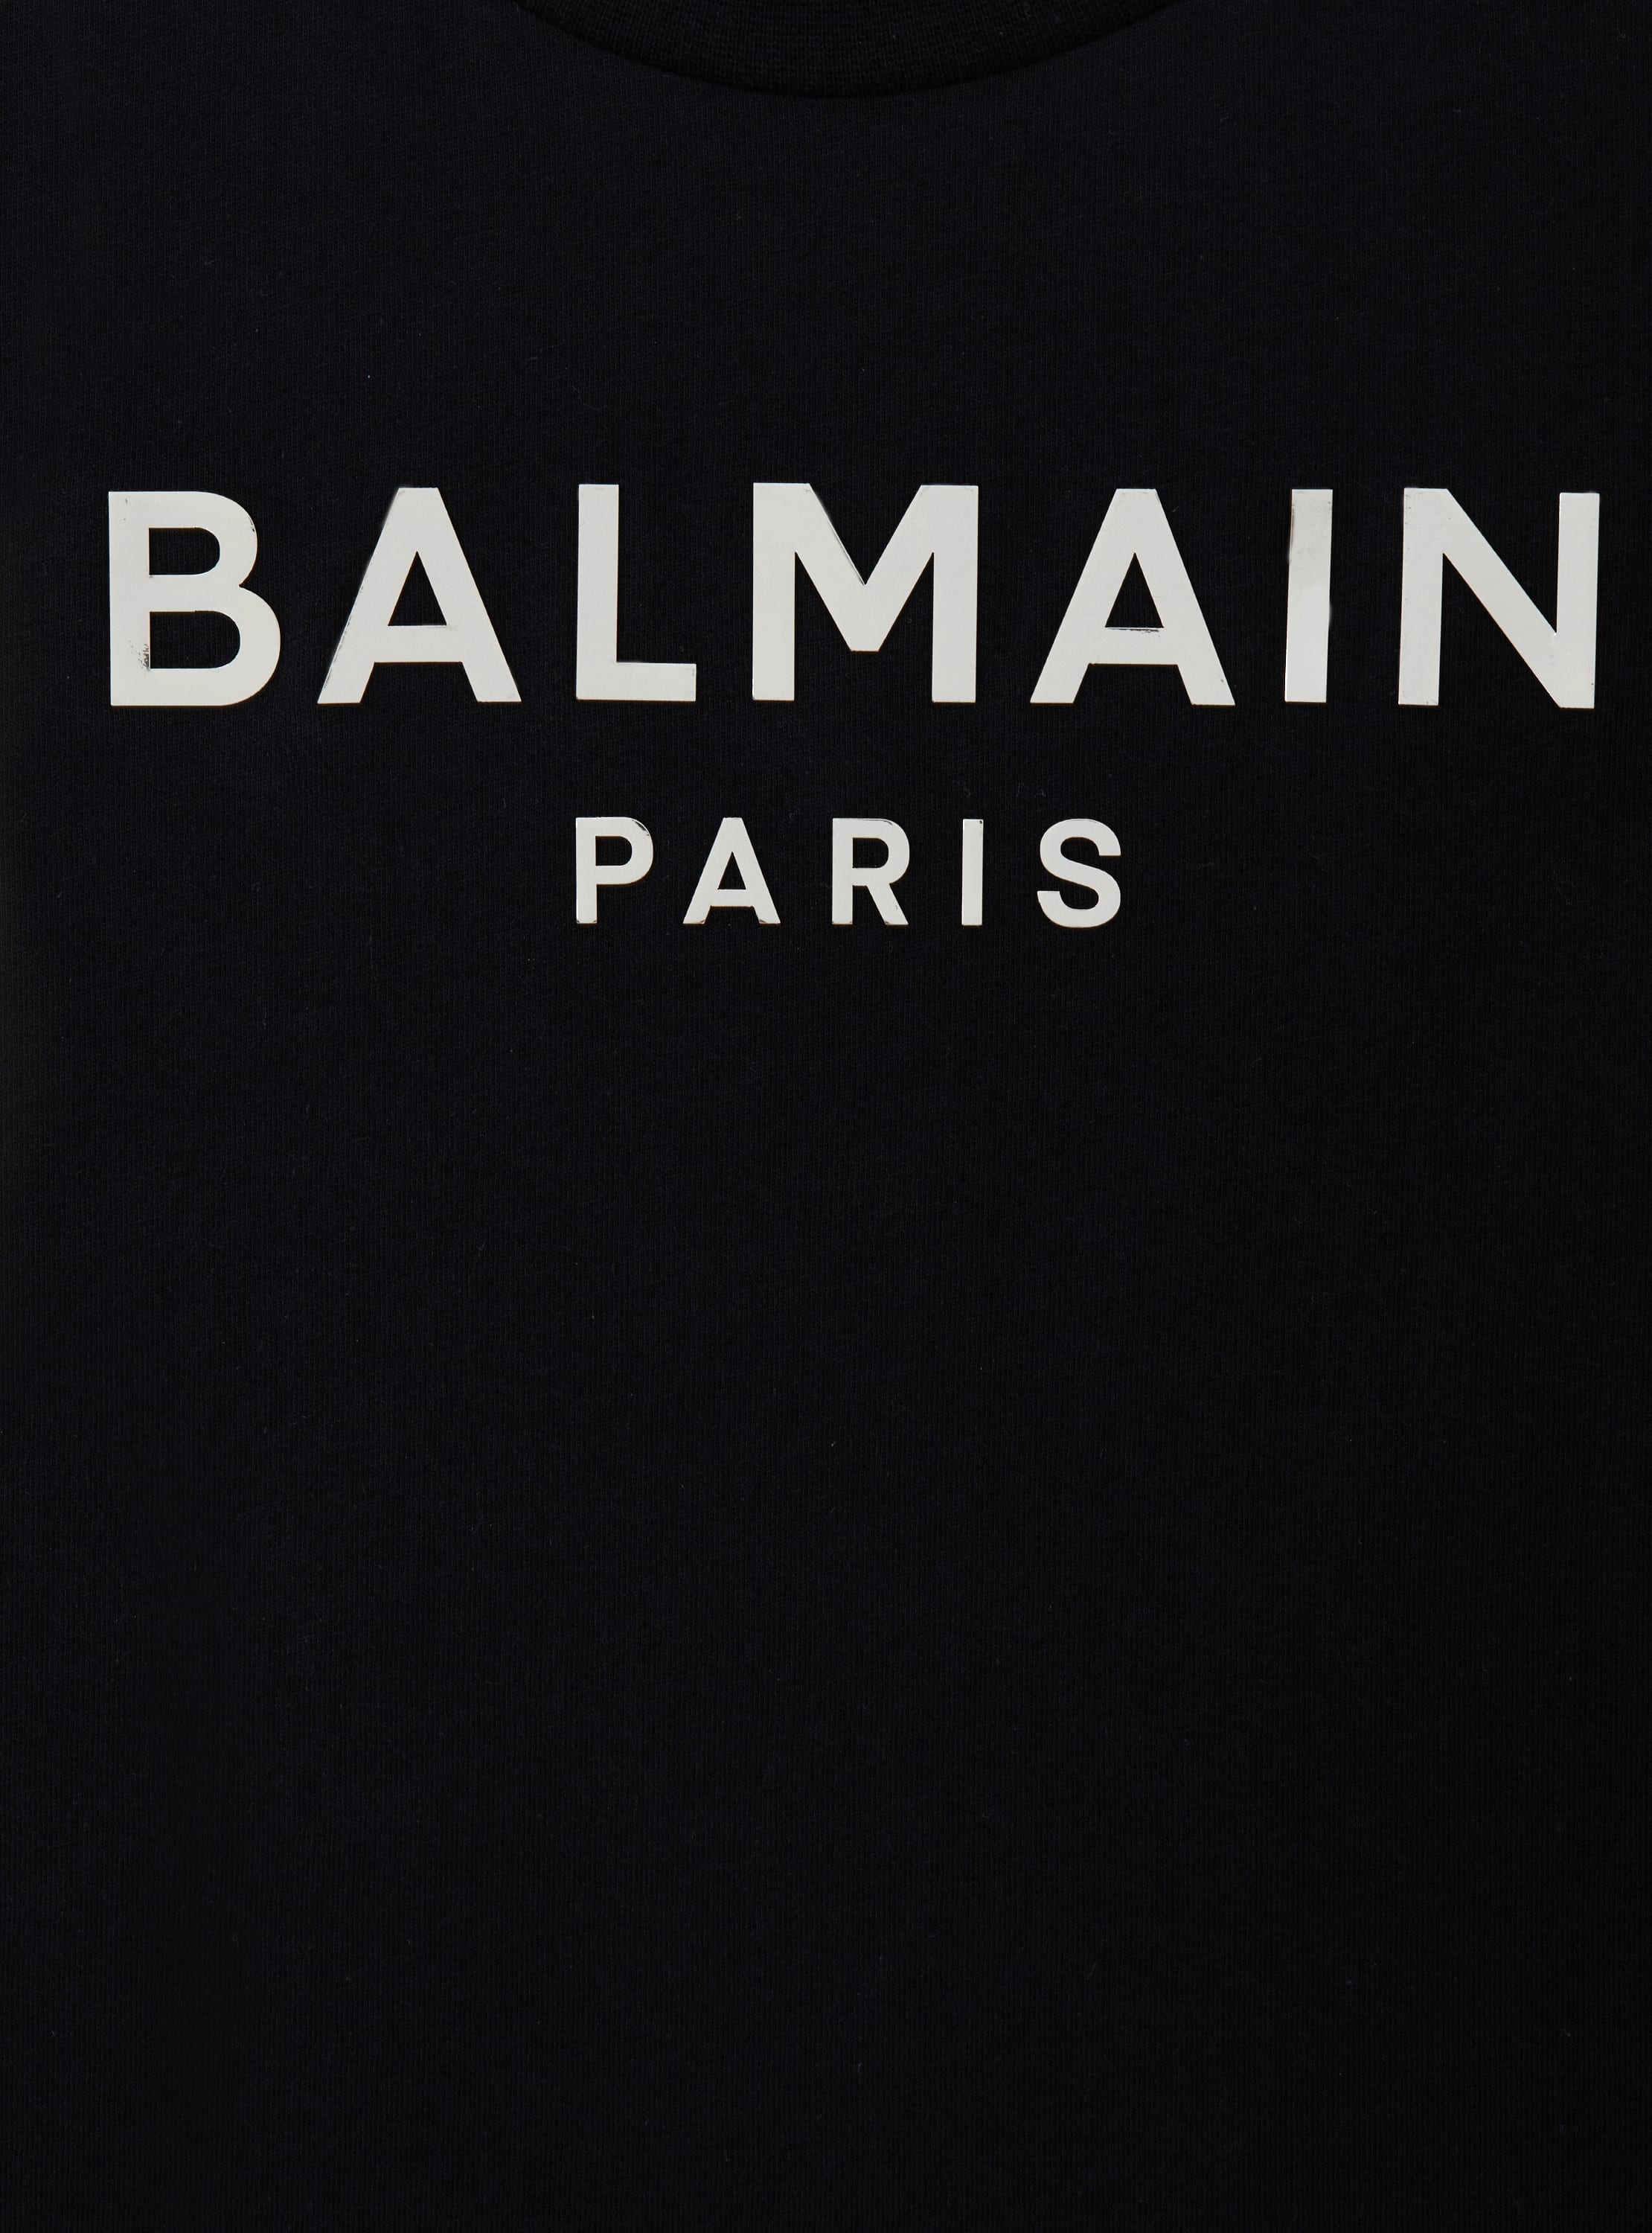 Balmain Paris metal T-shirt